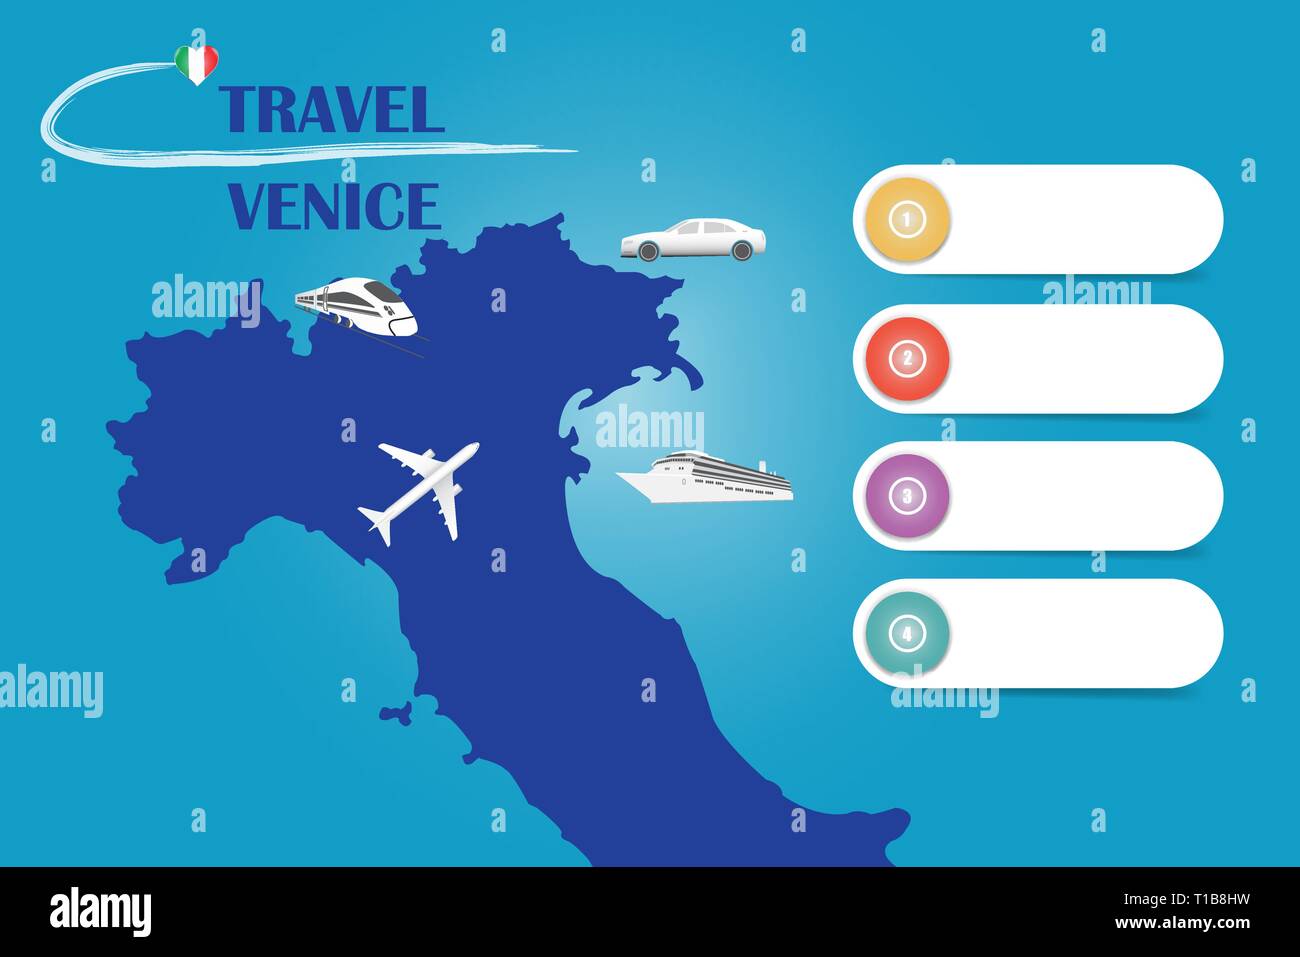 Reisen Venedig Vorlage Vektor für Reisebüros etc. Vector mit dem Flugzeug, Auto, Bahn und Schiff nähert sich der blinde Karte von Italien. Vier leere La Stock Vektor